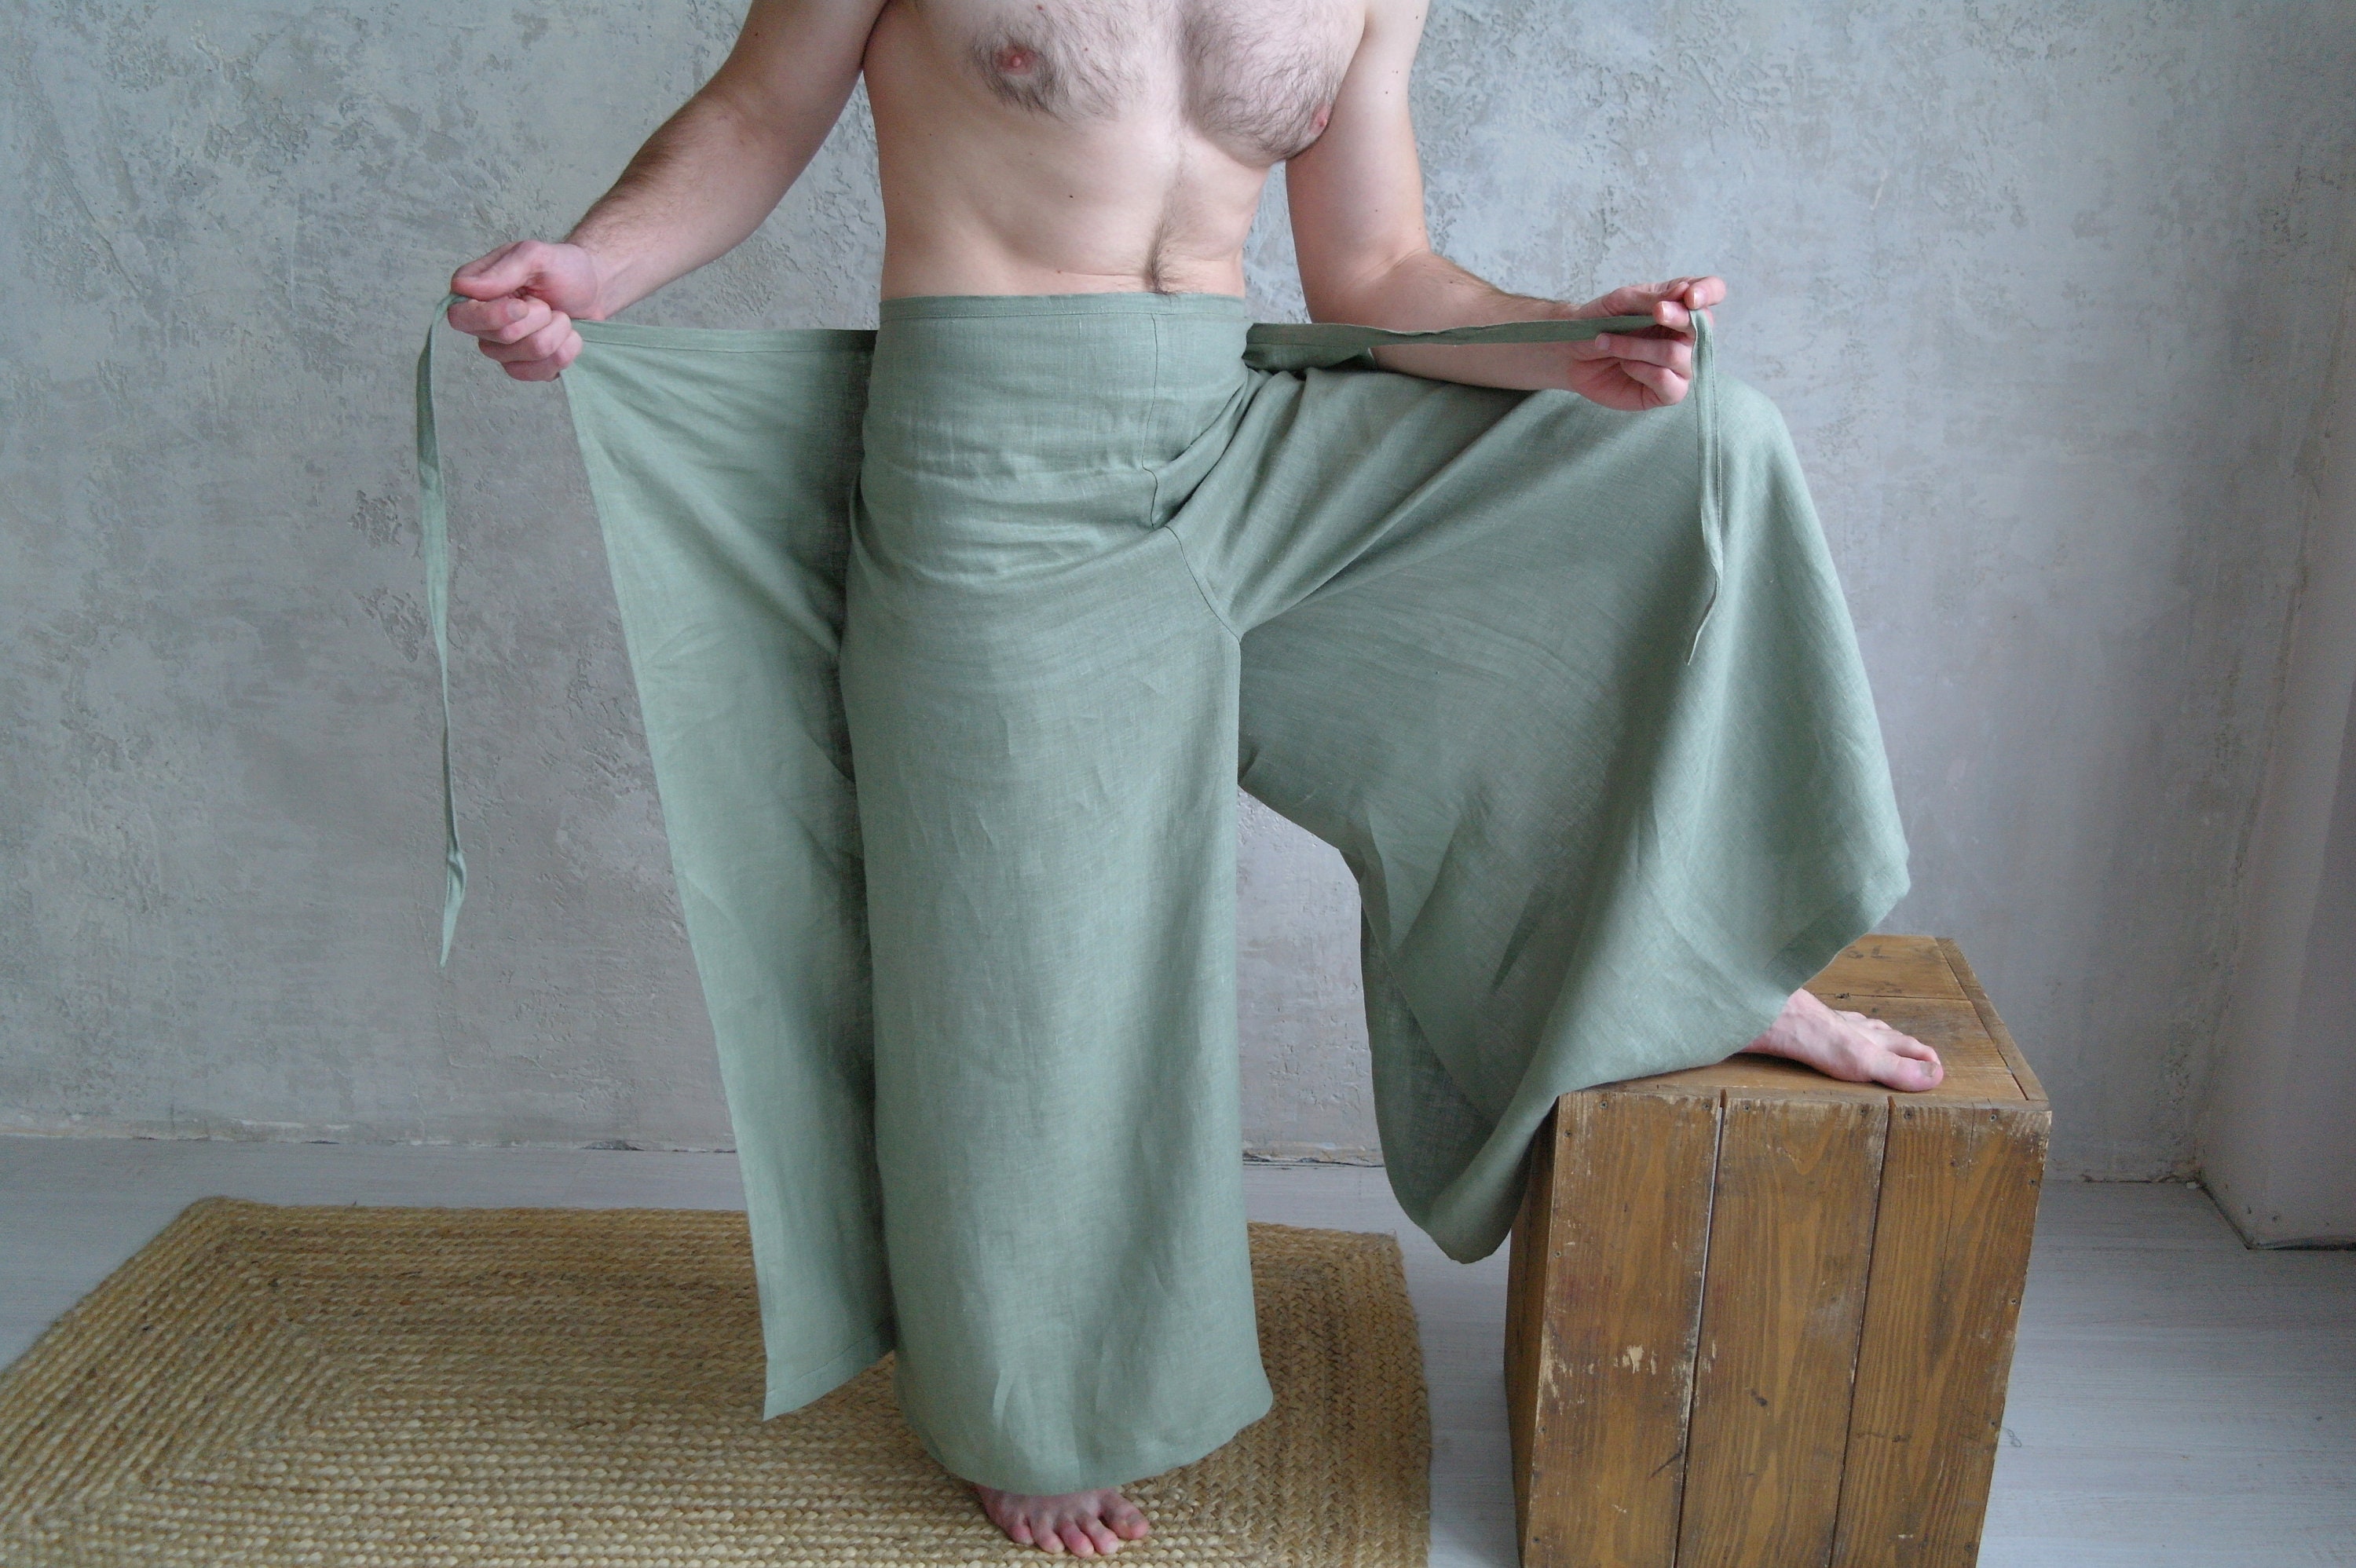 Pantalon large et léger pour femme détente yoga Ariane